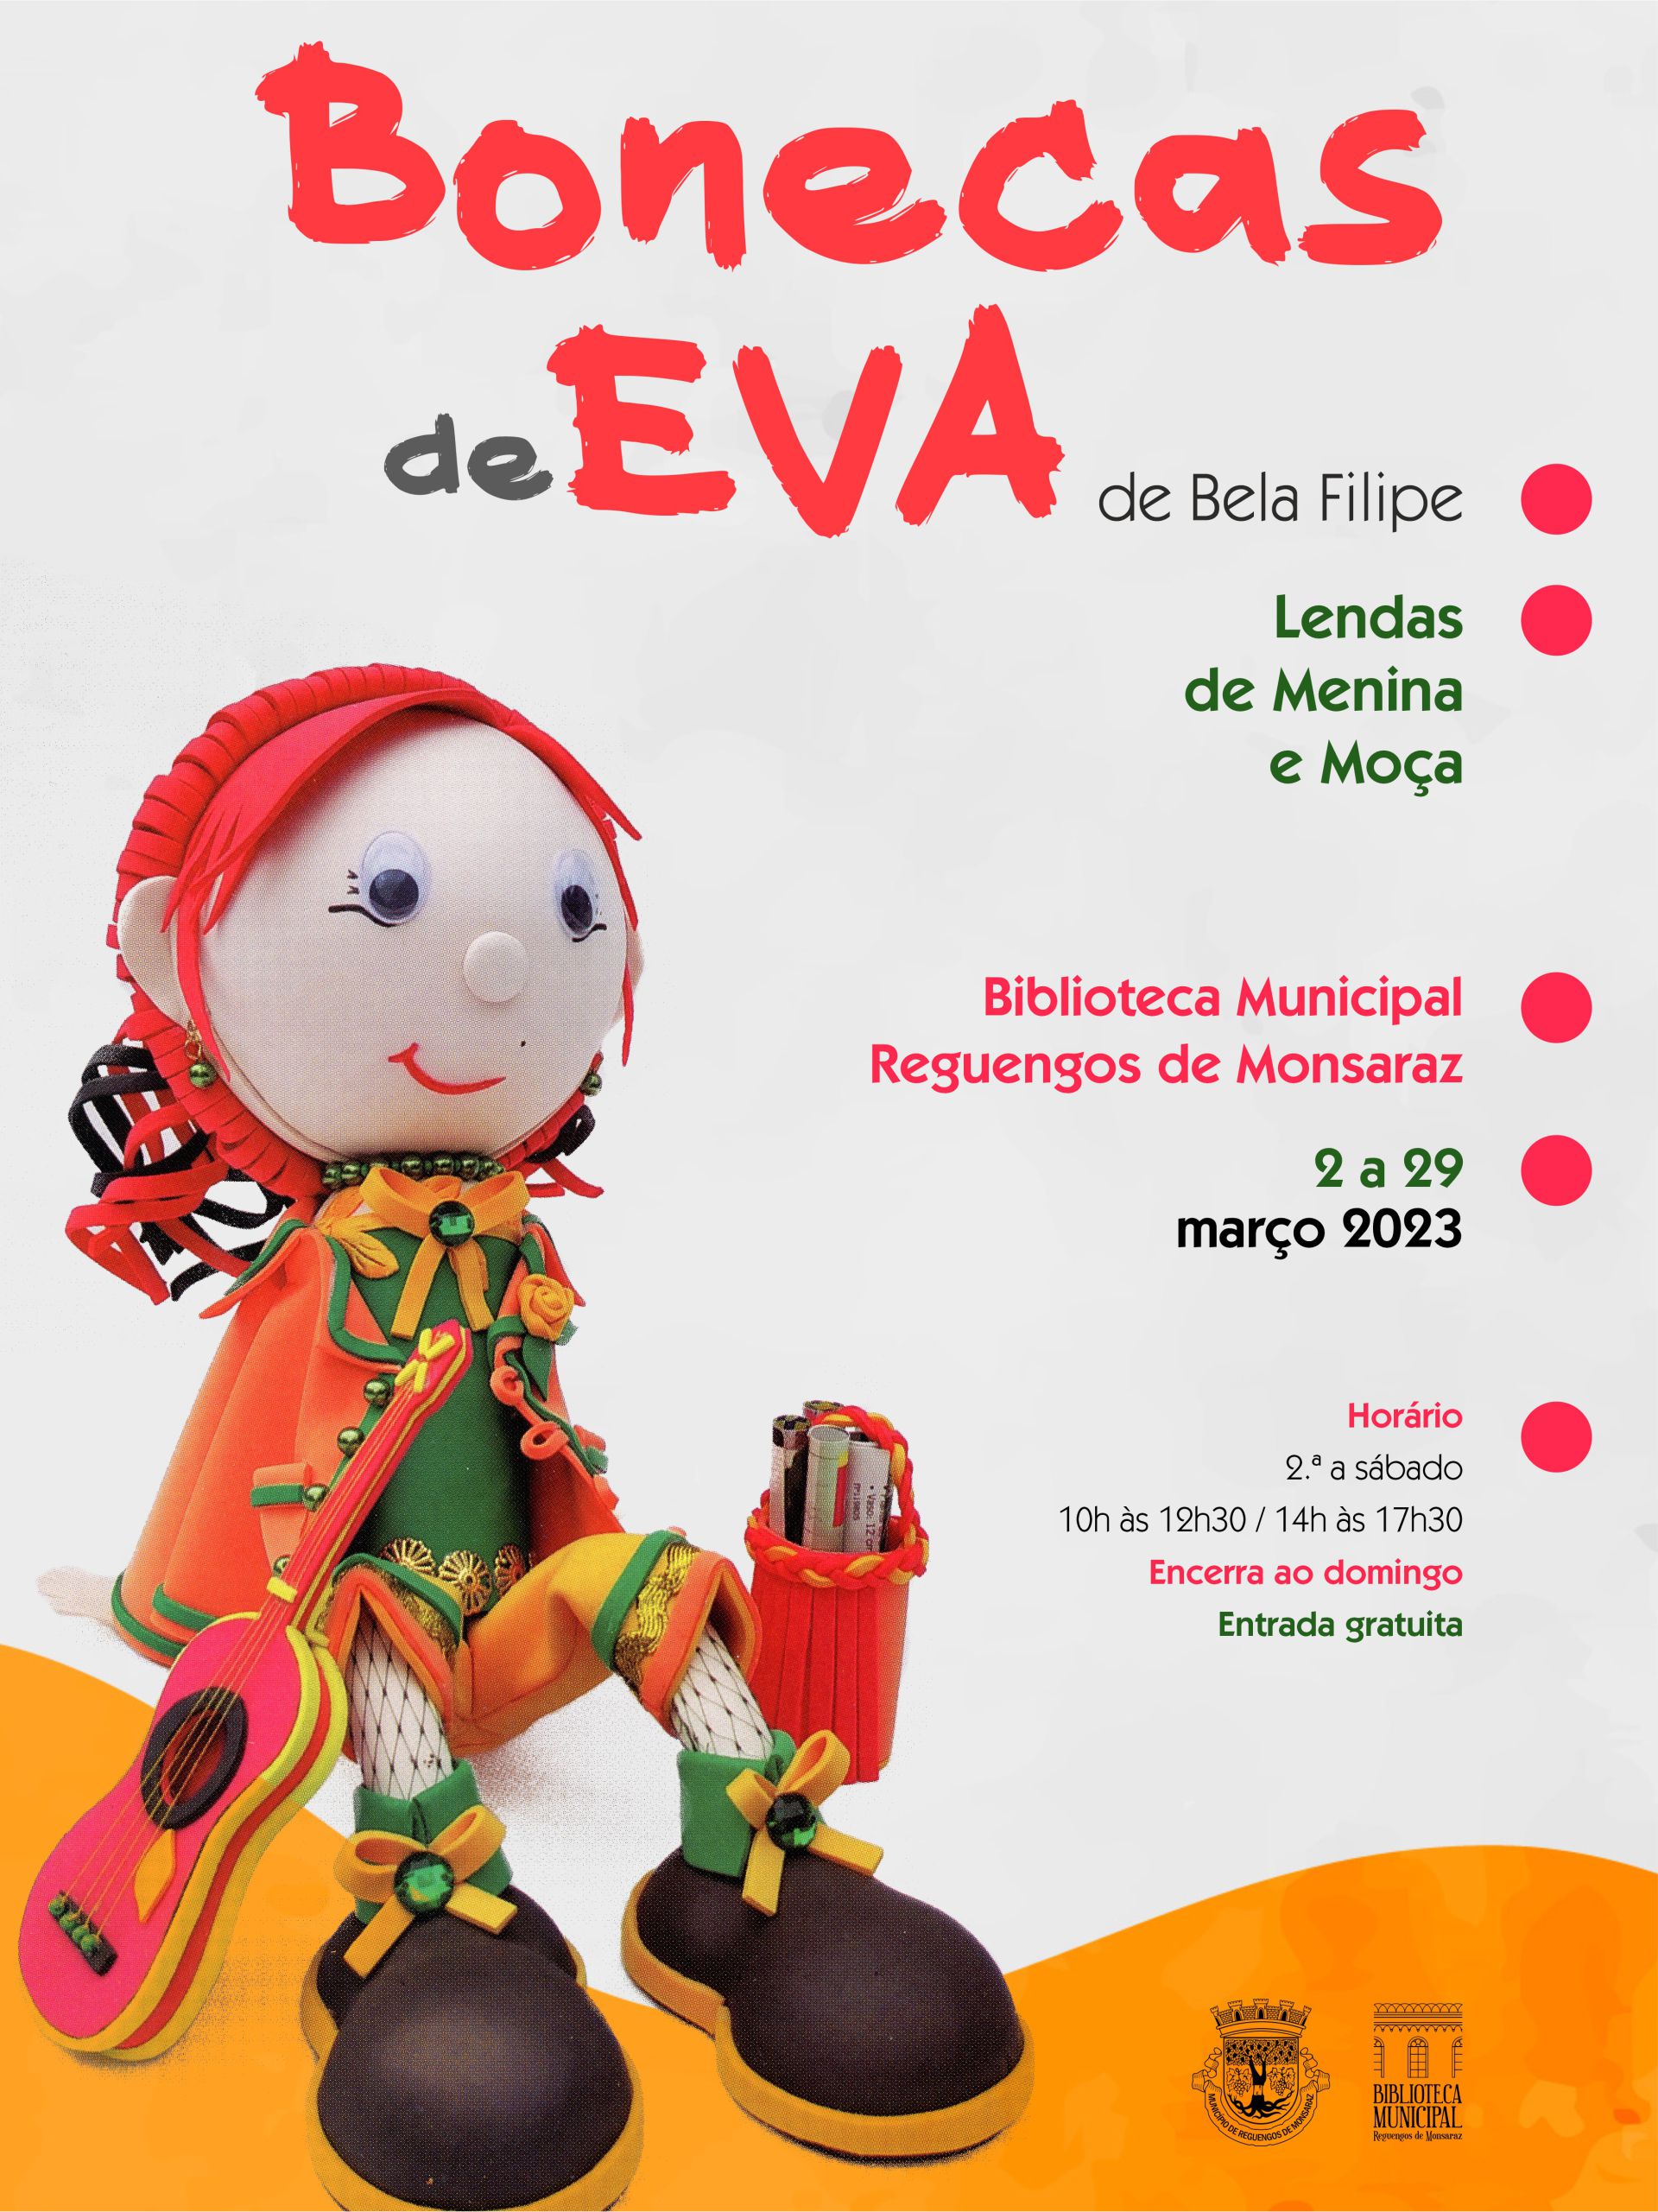 Bonecas de EVA, exposição de Bela Filipe